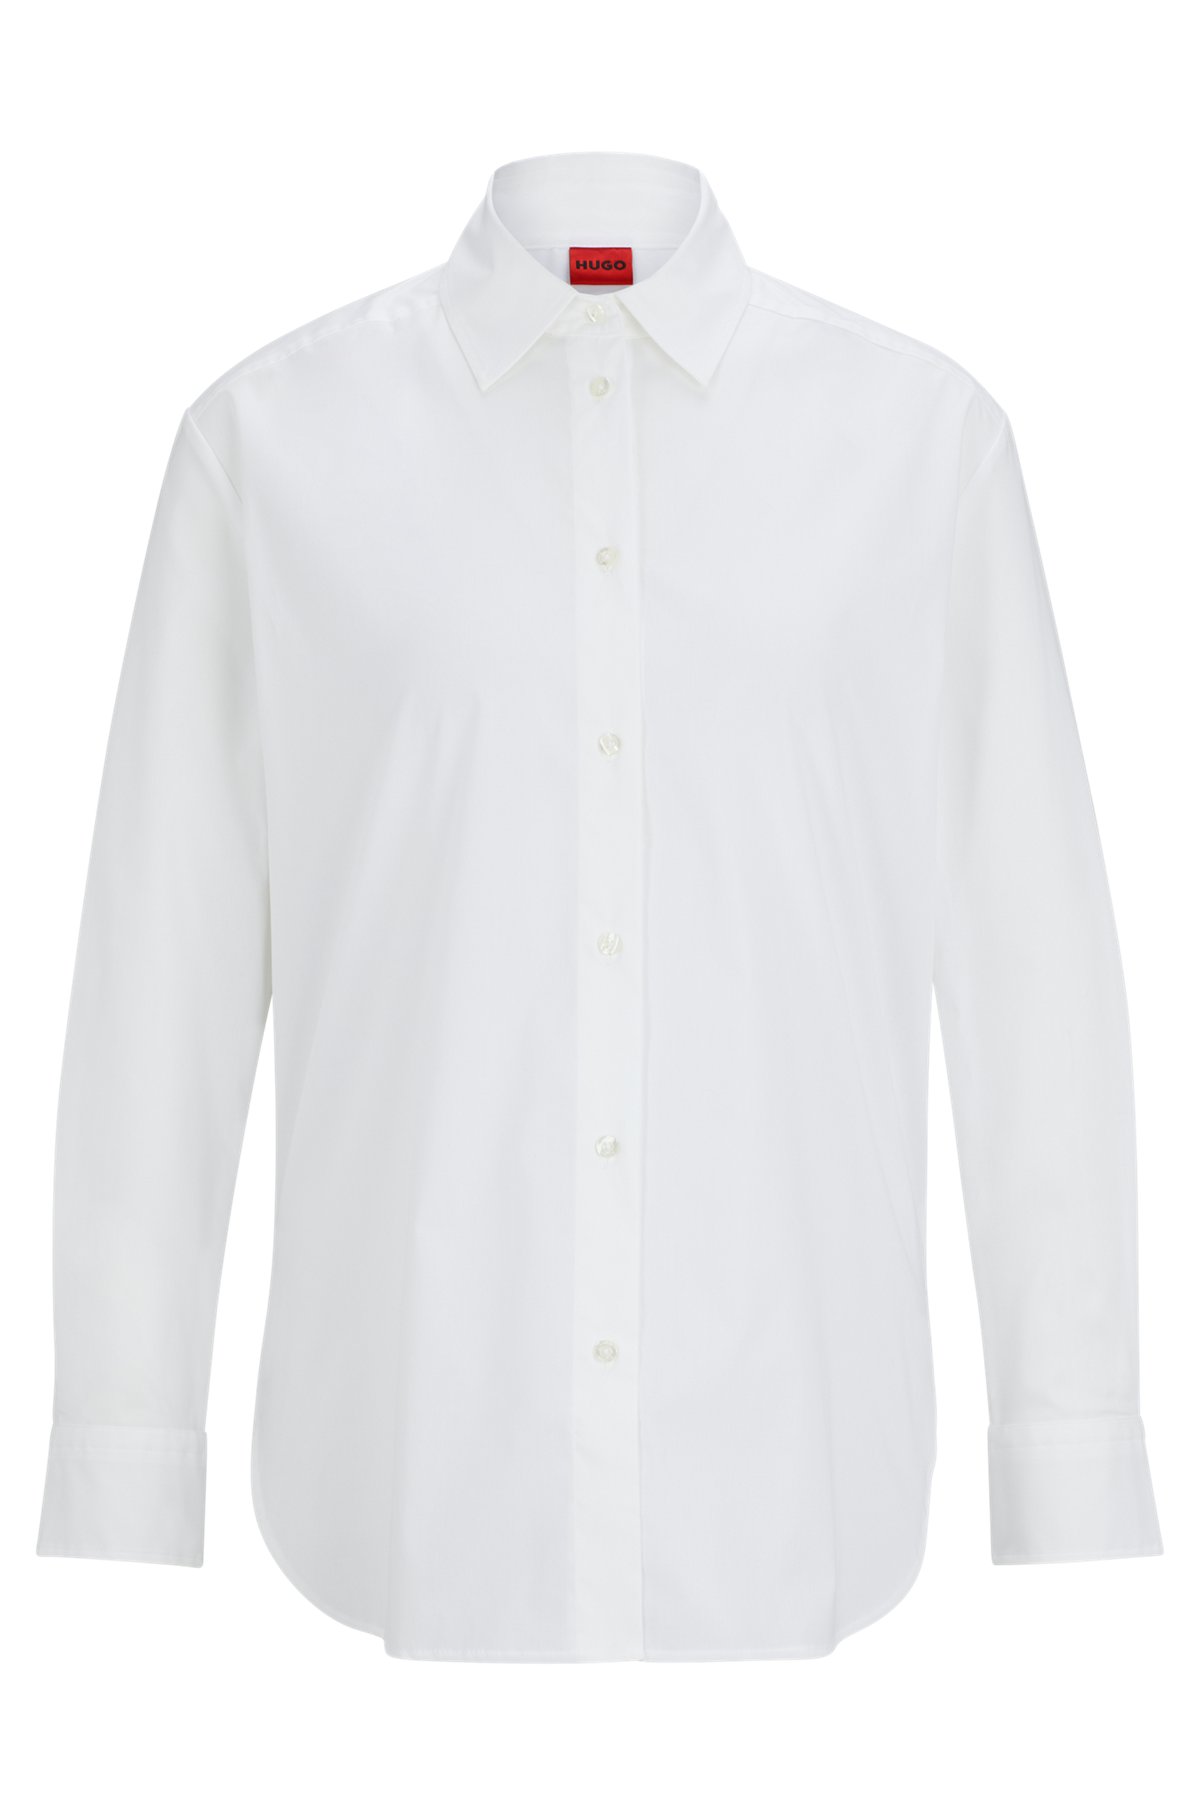 Oversized Bluse aus Stretch-Baumwolle mit rotem Logo-Label, Weiß